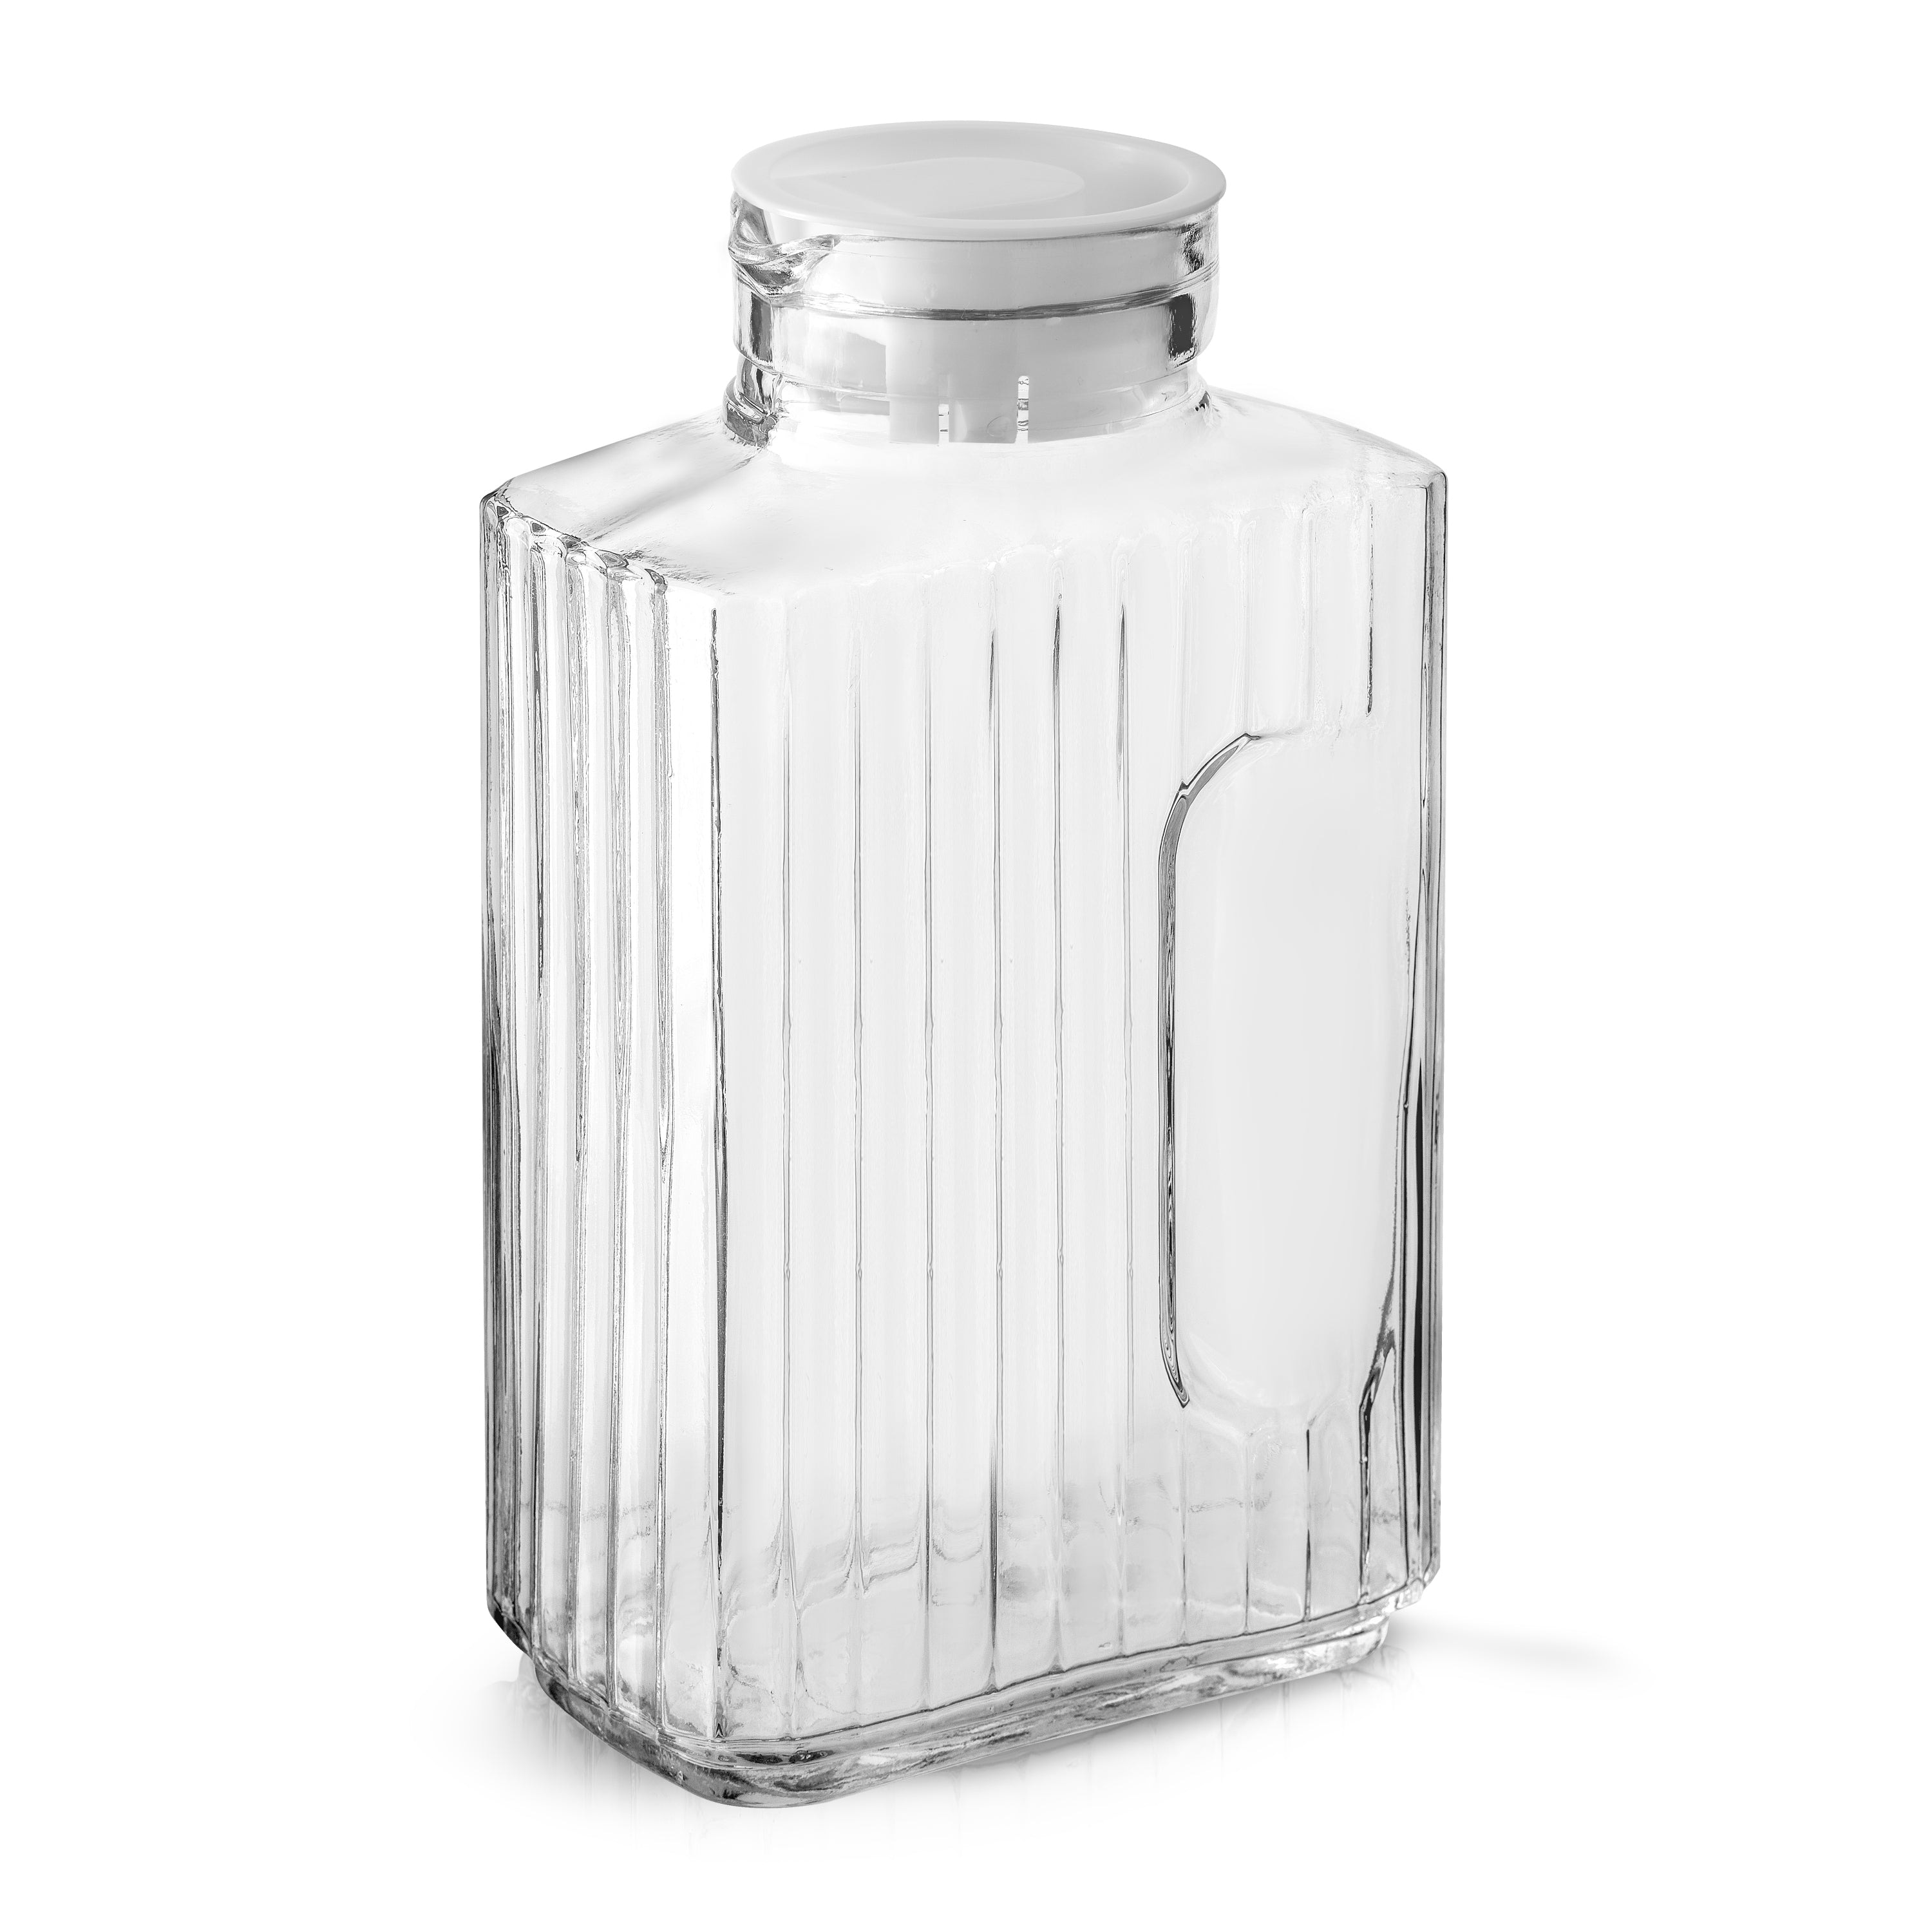 JoyJolt Reusable Glass Milk Bottle with Lid & Pourer - 64 oz - Set